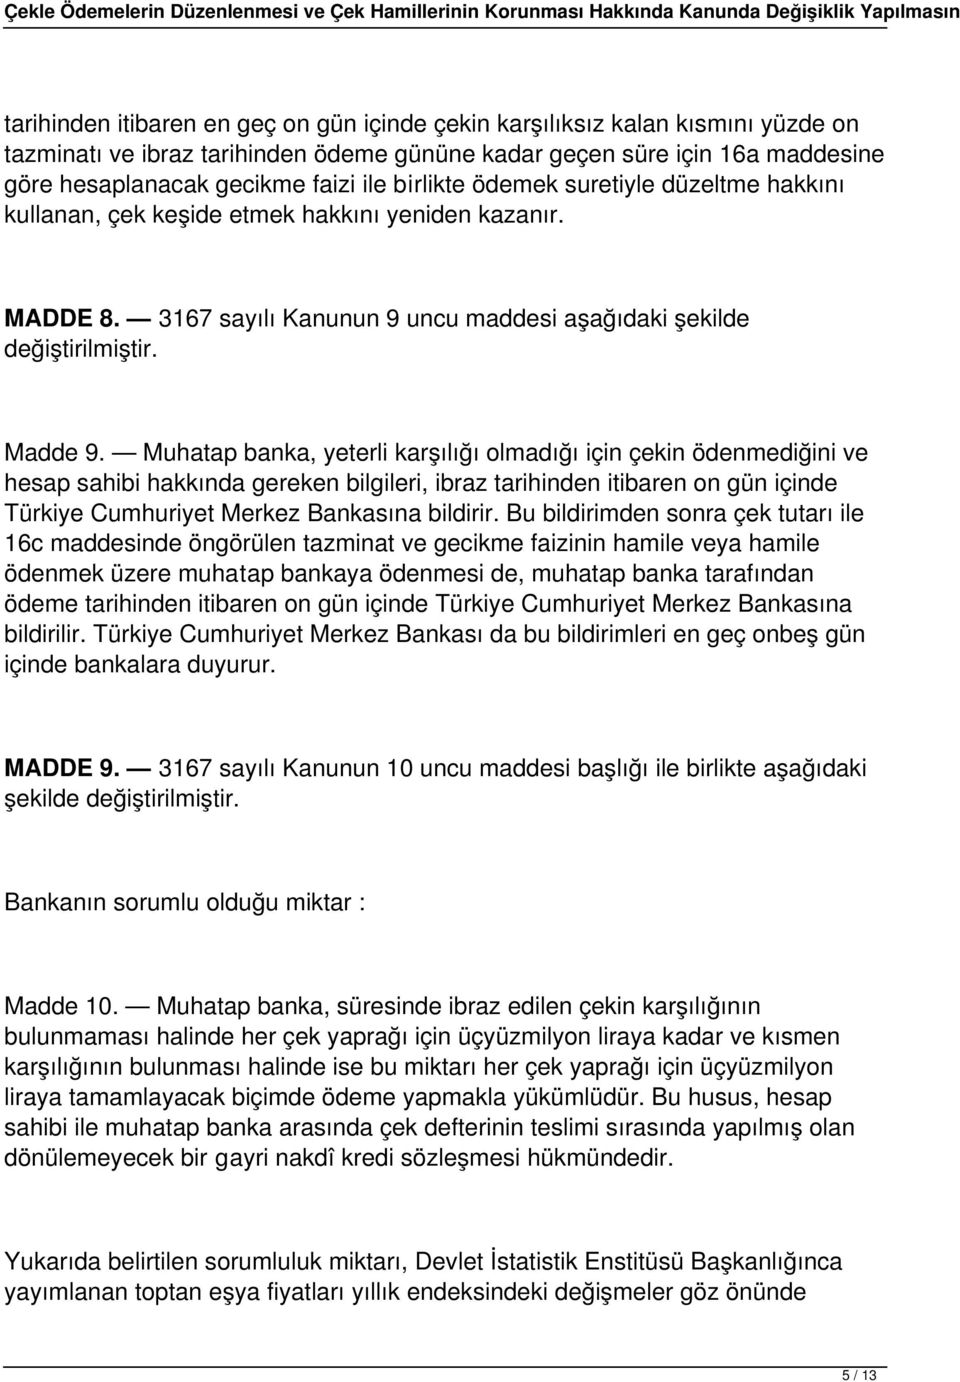 Muhatap banka, yeterli karşılığı olmadığı için çekin ödenmediğini ve hesap sahibi hakkında gereken bilgileri, ibraz tarihinden itibaren on gün içinde Türkiye Cumhuriyet Merkez Bankasına bildirir.